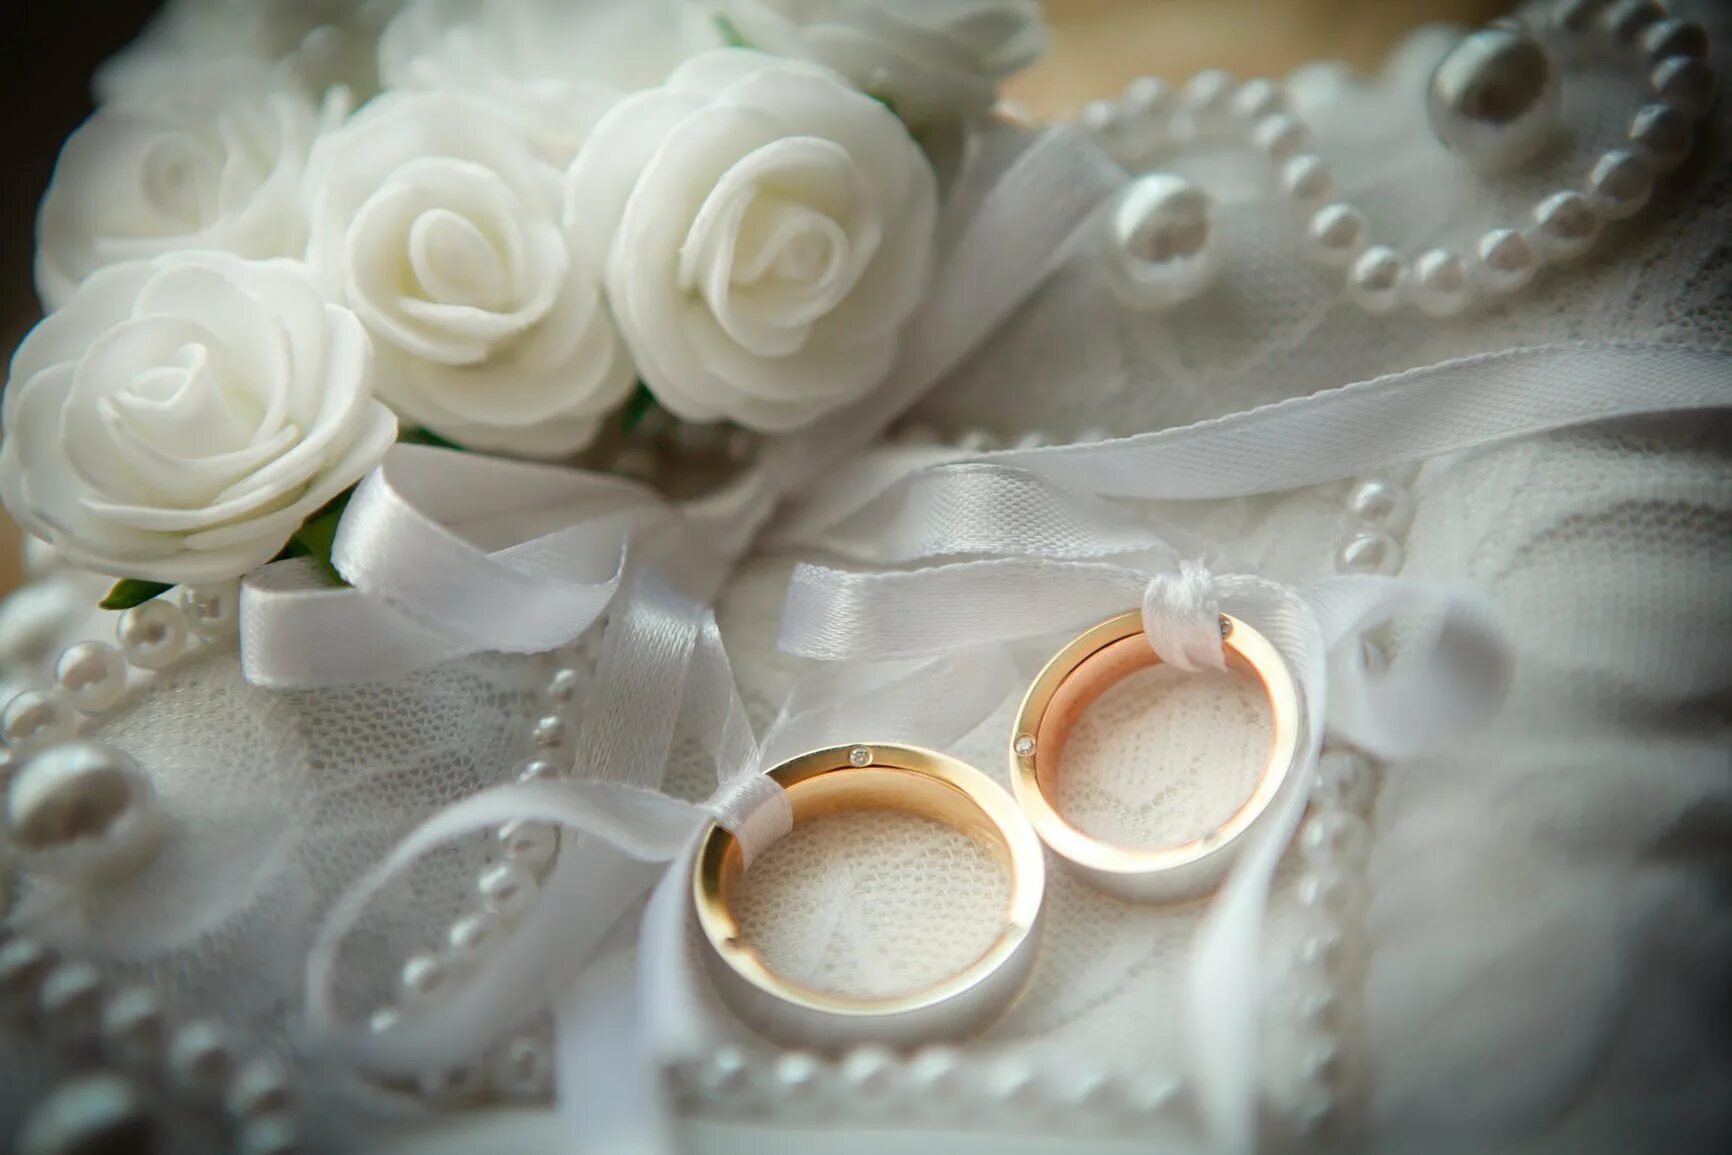 Свадьба картинки. Свадебная тематика. Свадебные кольца и цветы. С днем свадьбы нежные. На белых цветах обручальные кольца.